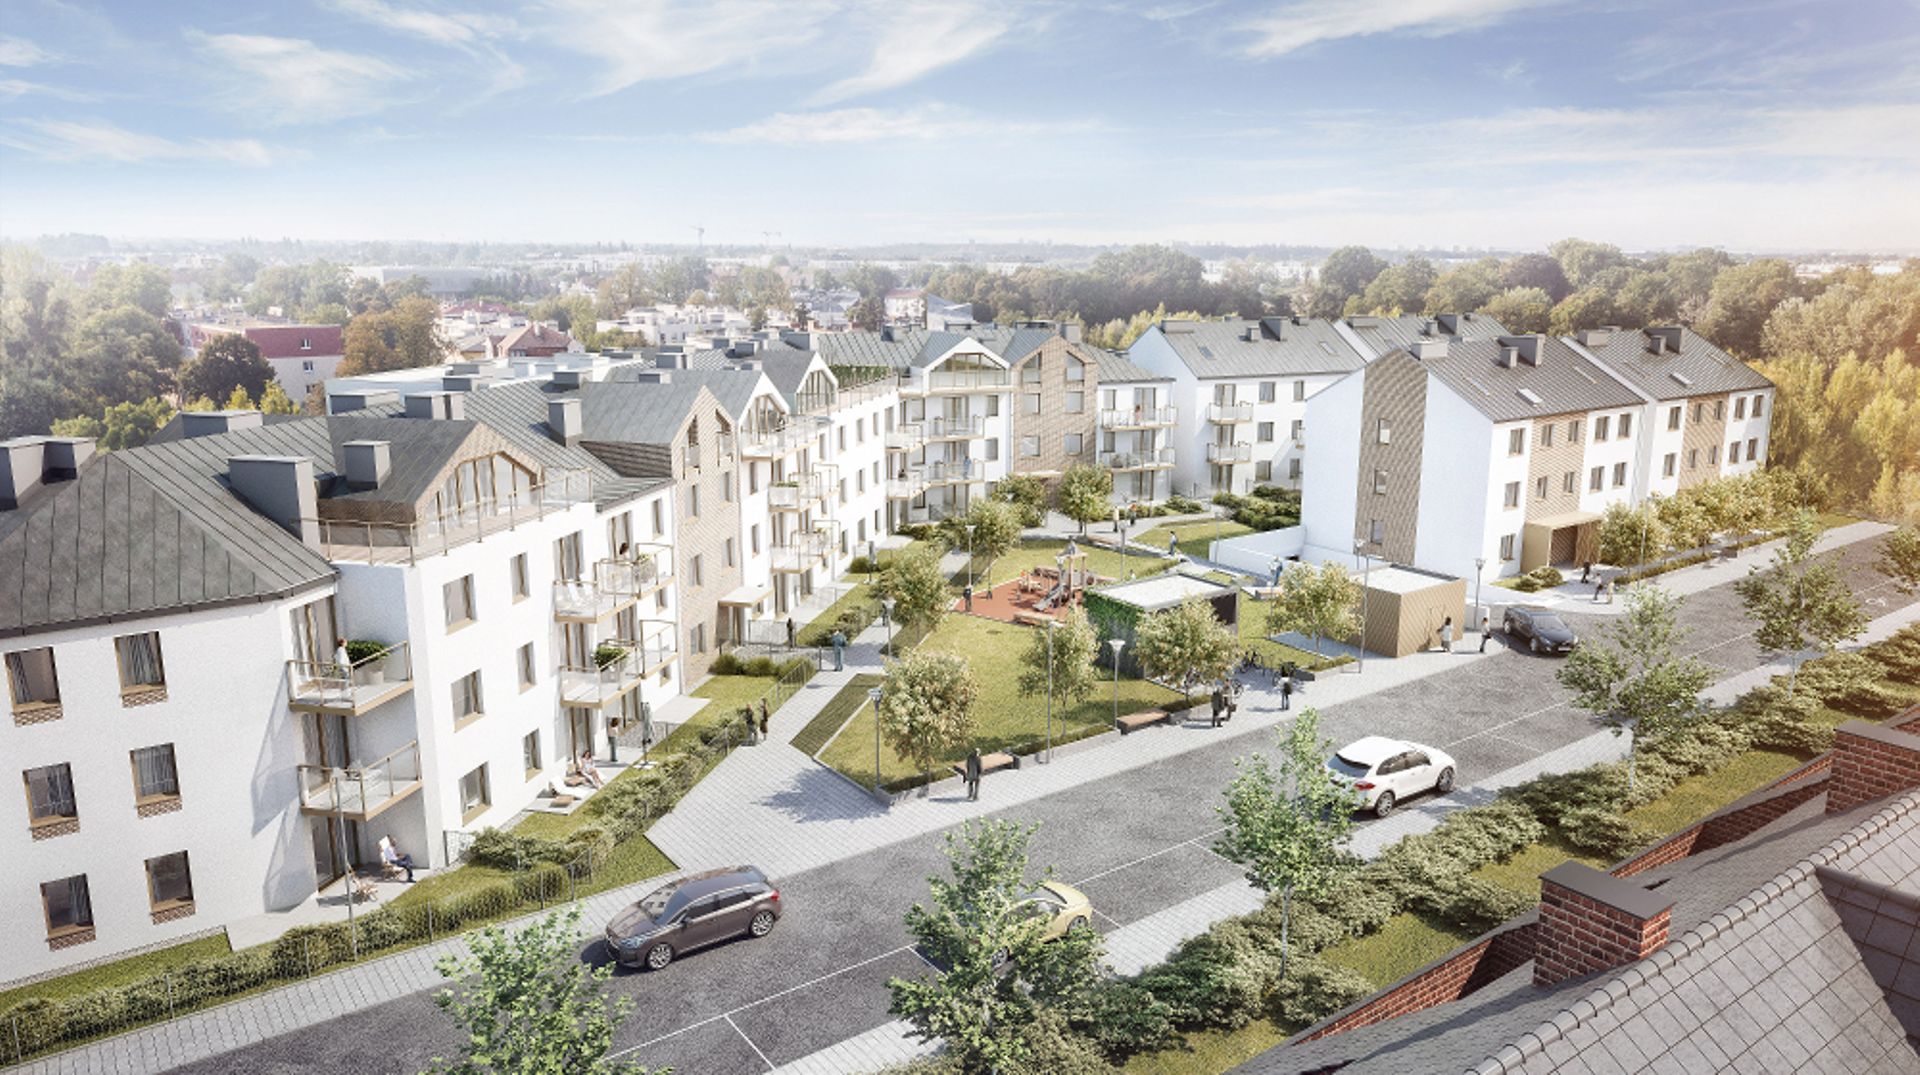  Kameralna Klecina – Vantage Development rusza ze sprzedażą mieszkań na południu Wrocławia 